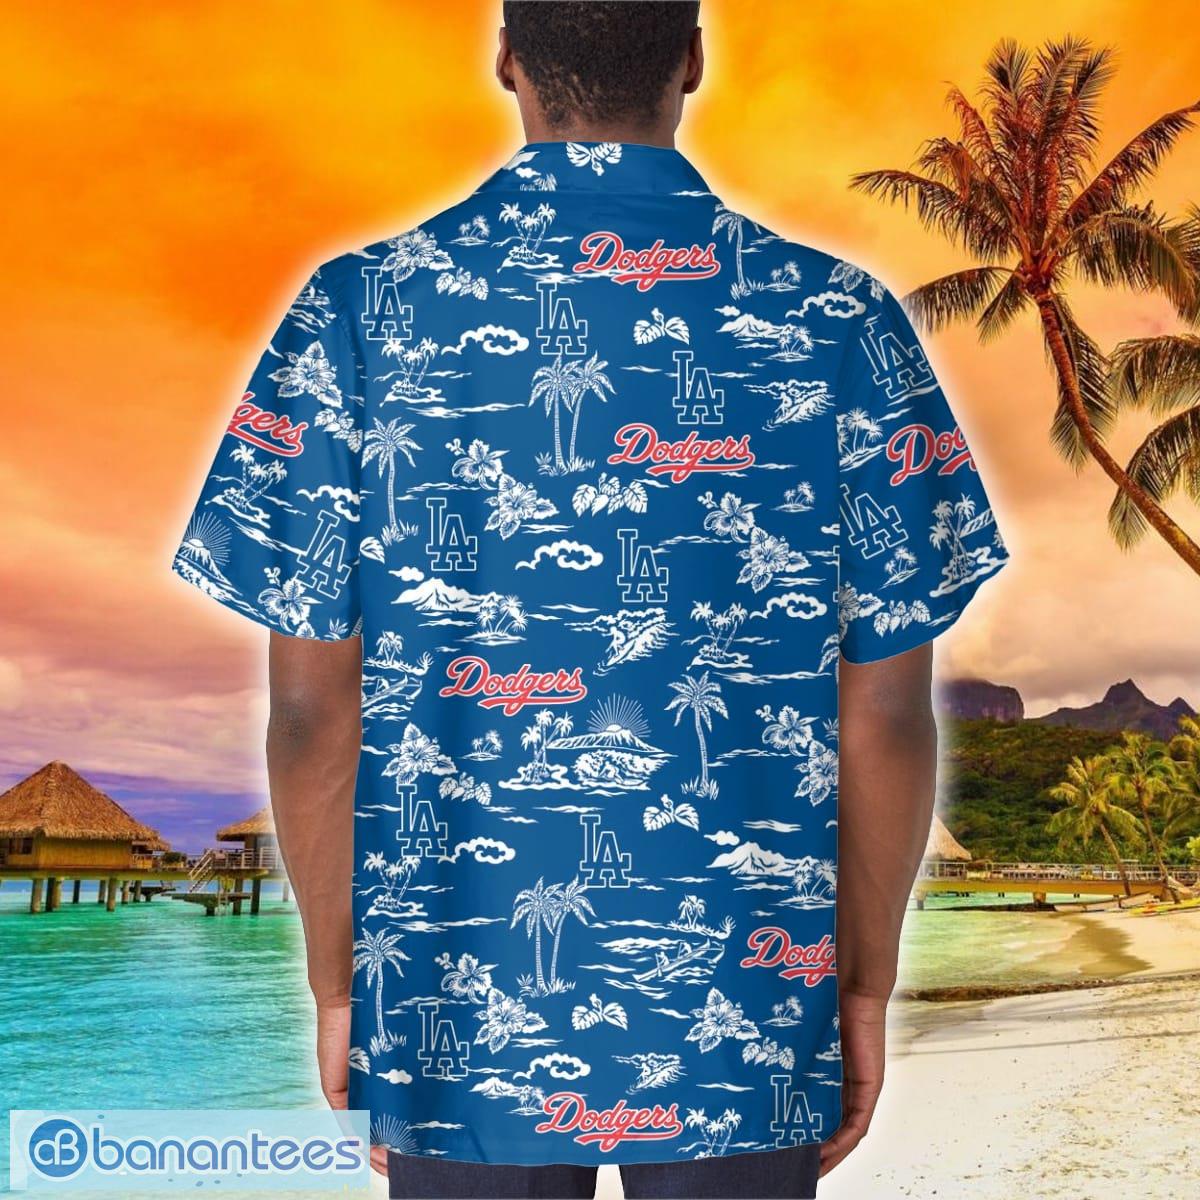 Los Angeles Dodgers Souvenir 3D Hawaiian Shirt Best For Fans Beach